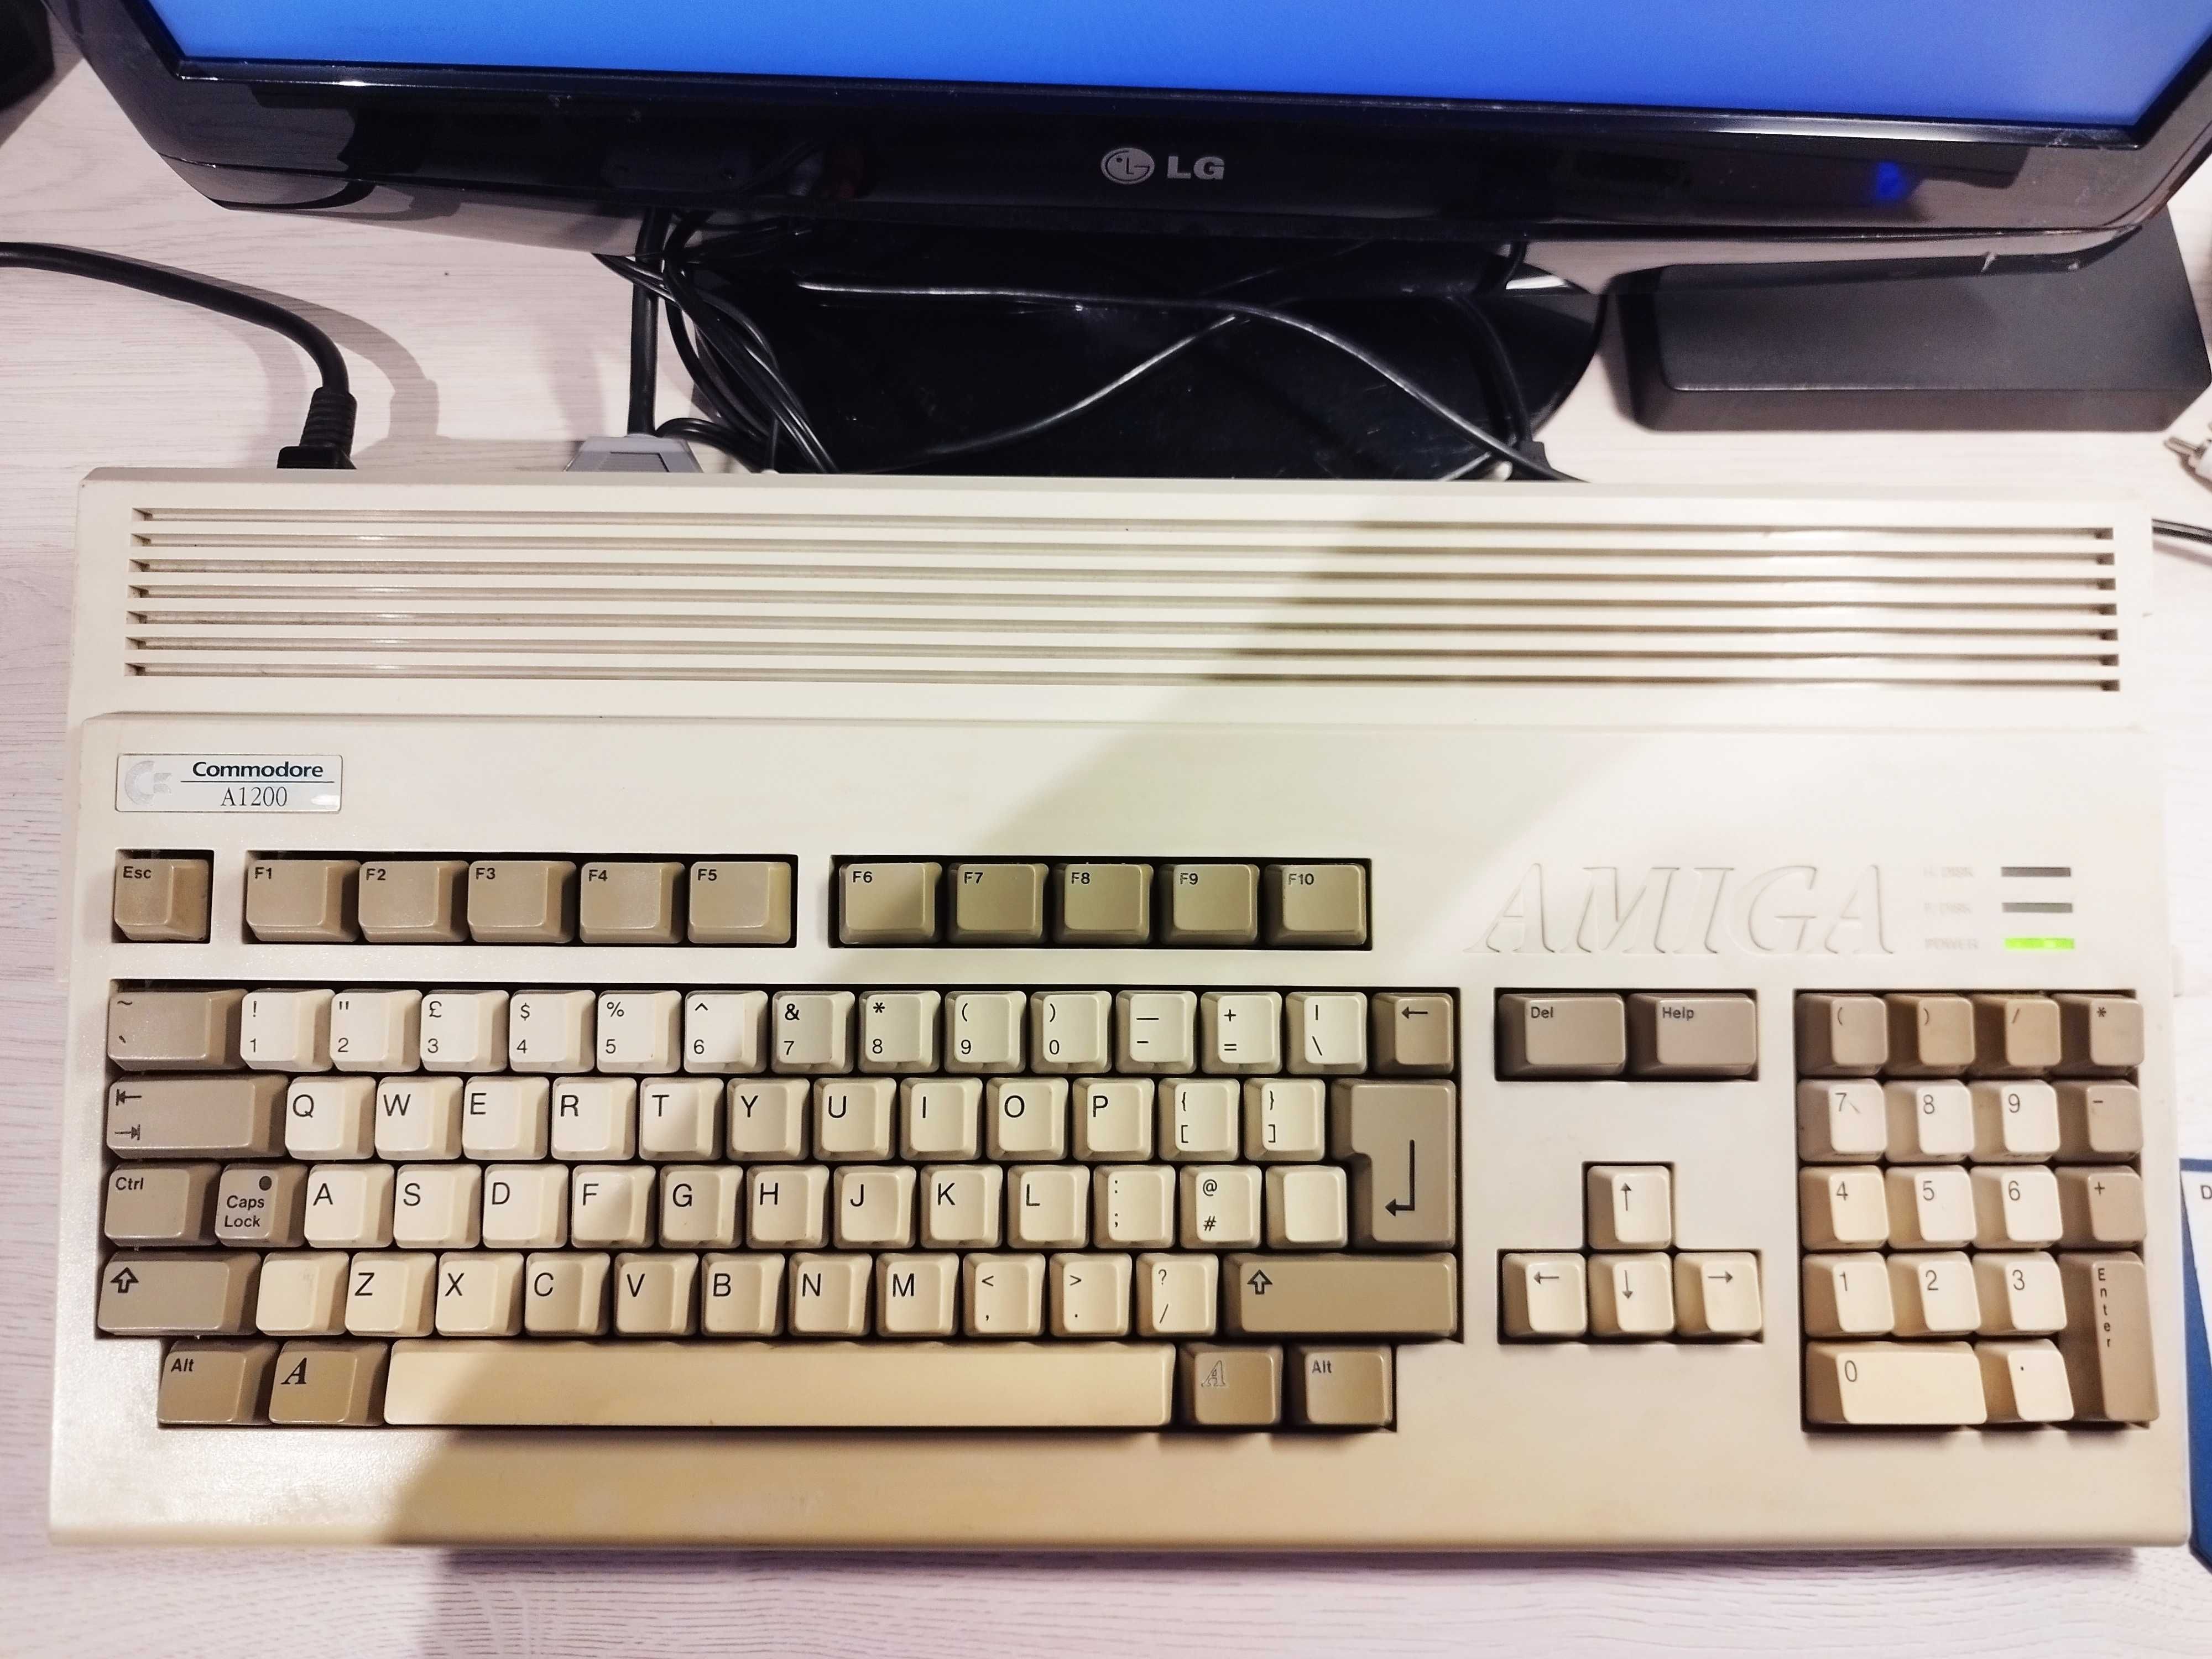 Amiga 1200 z joystickiem oraz oryginalną dyskietką Deluxepaint IV